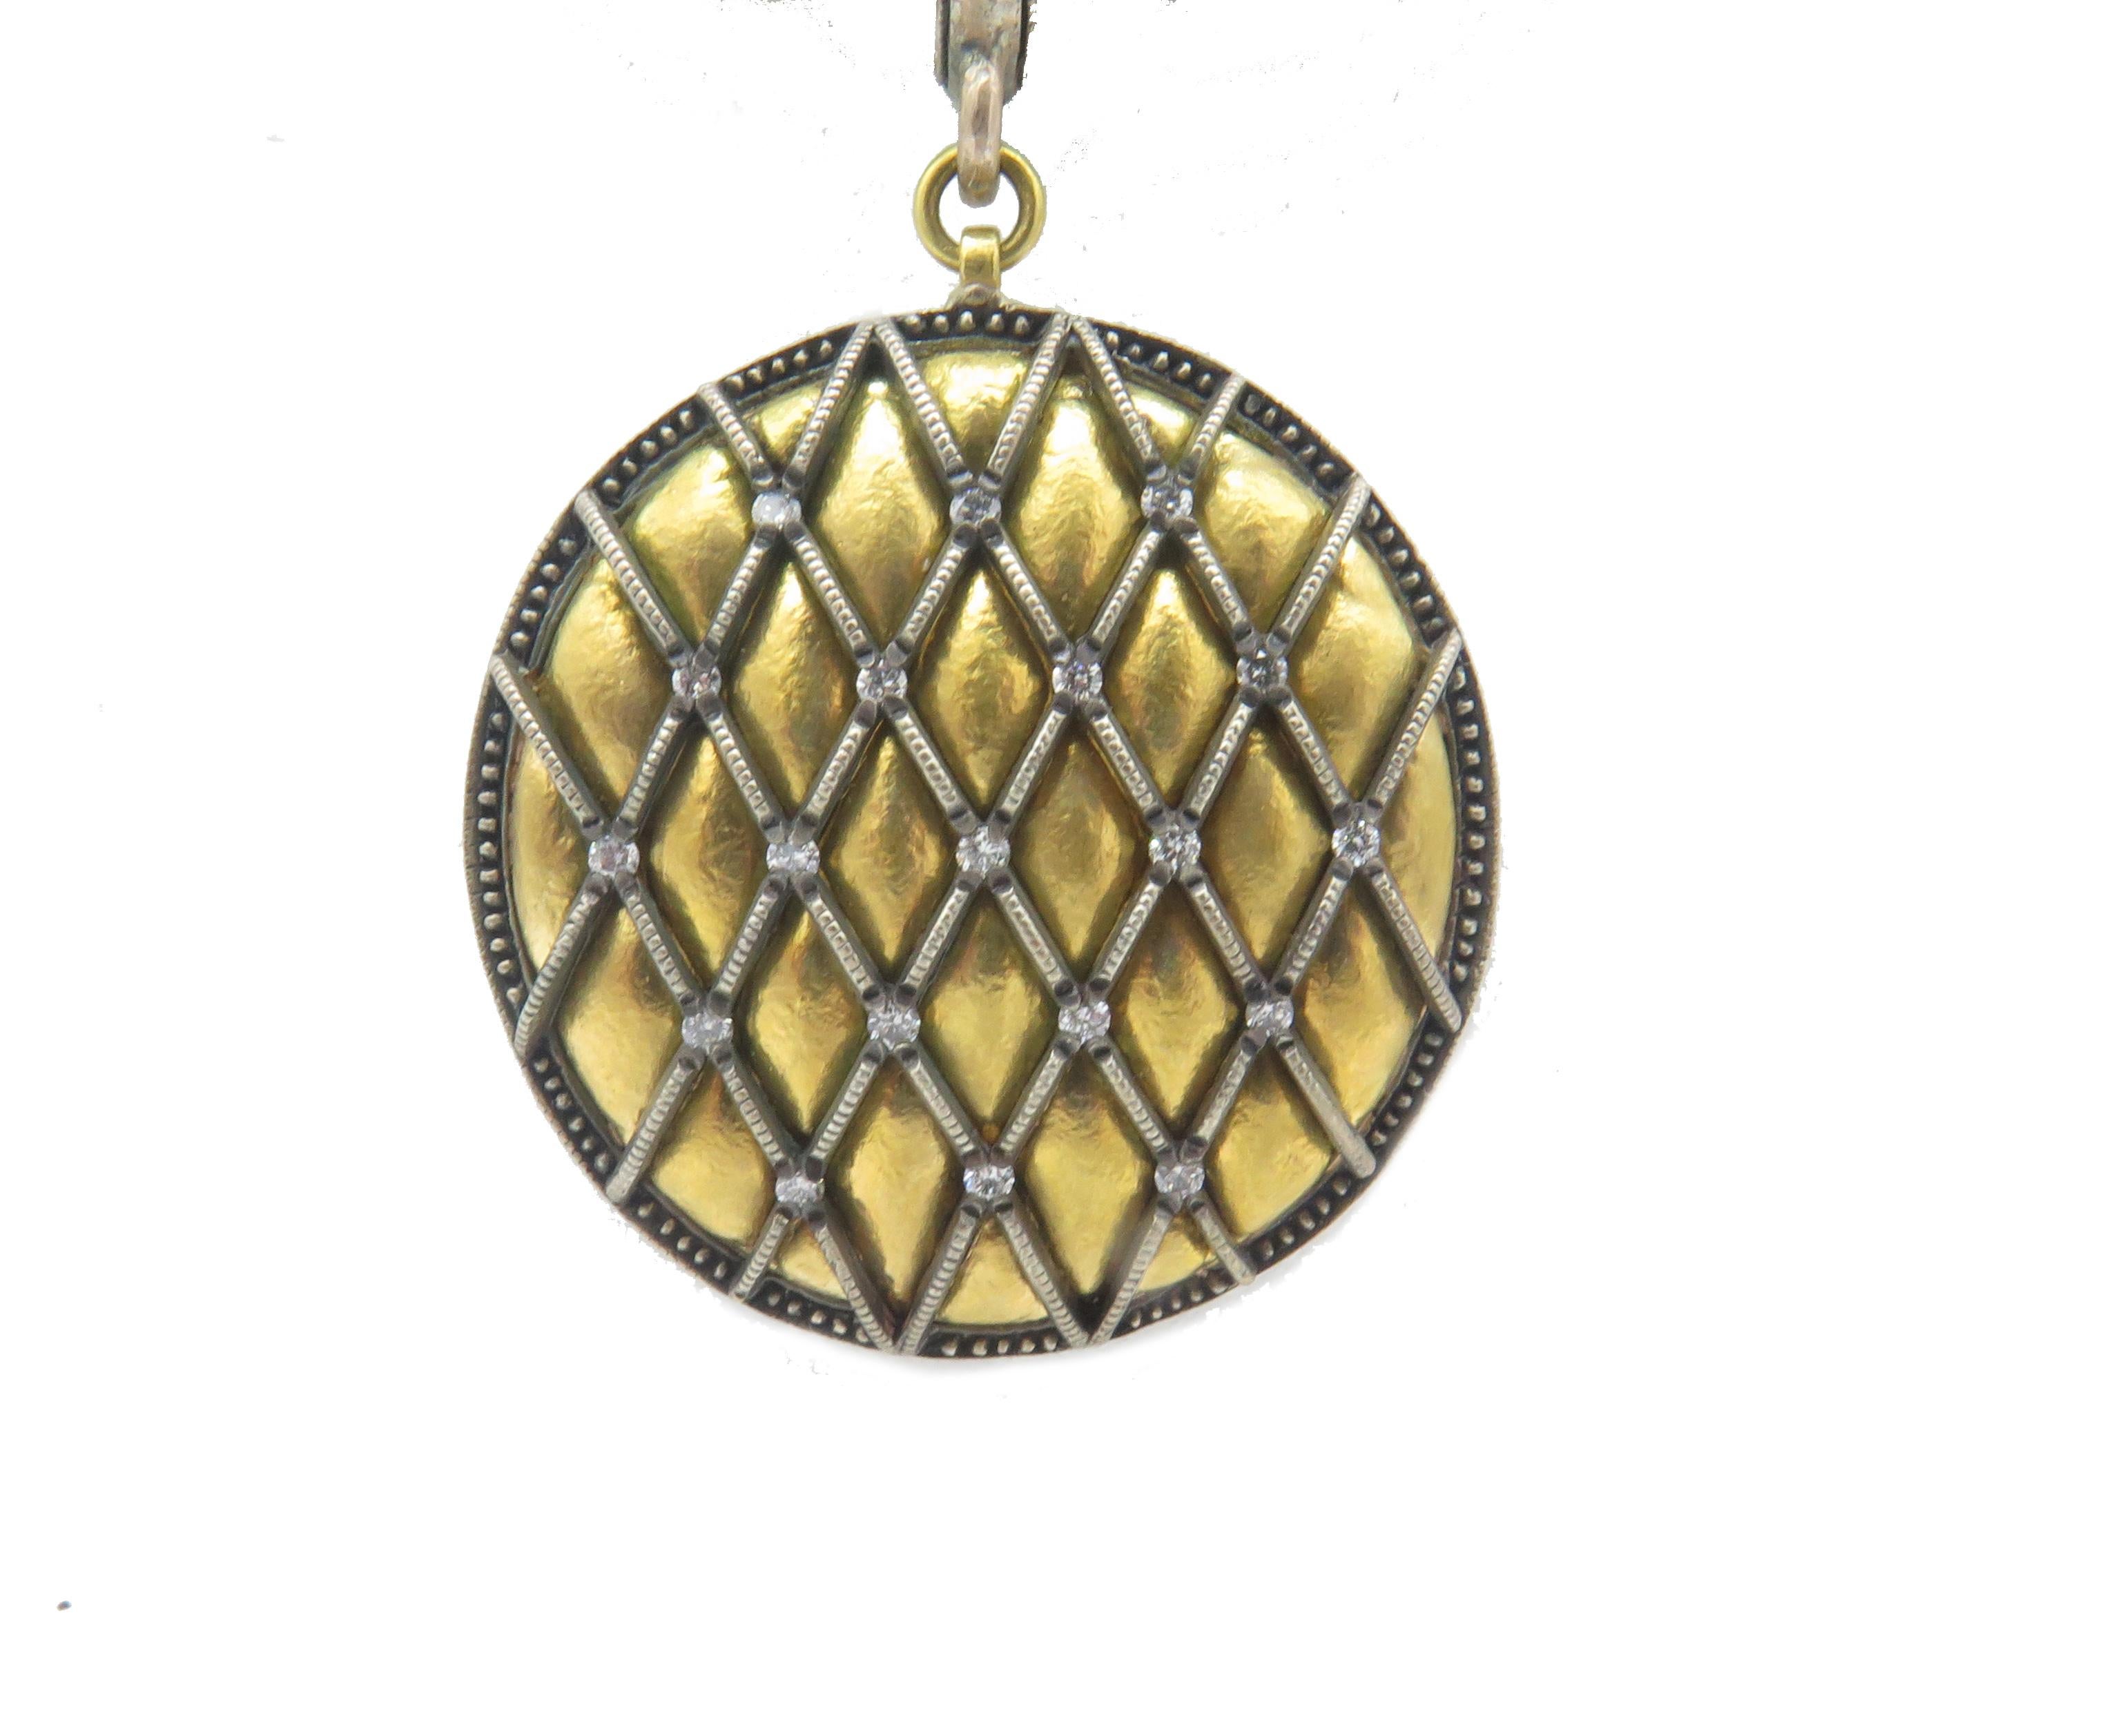 Un, magnifique collier de diamants 24K & Argent par Gurhan, cette annonce est pour le collier mais vous pouvez l'acheter comme une suite avec la paire de boucles d'oreilles. Il s'agit d'un magnifique collier avec un beau design en forme de poire en